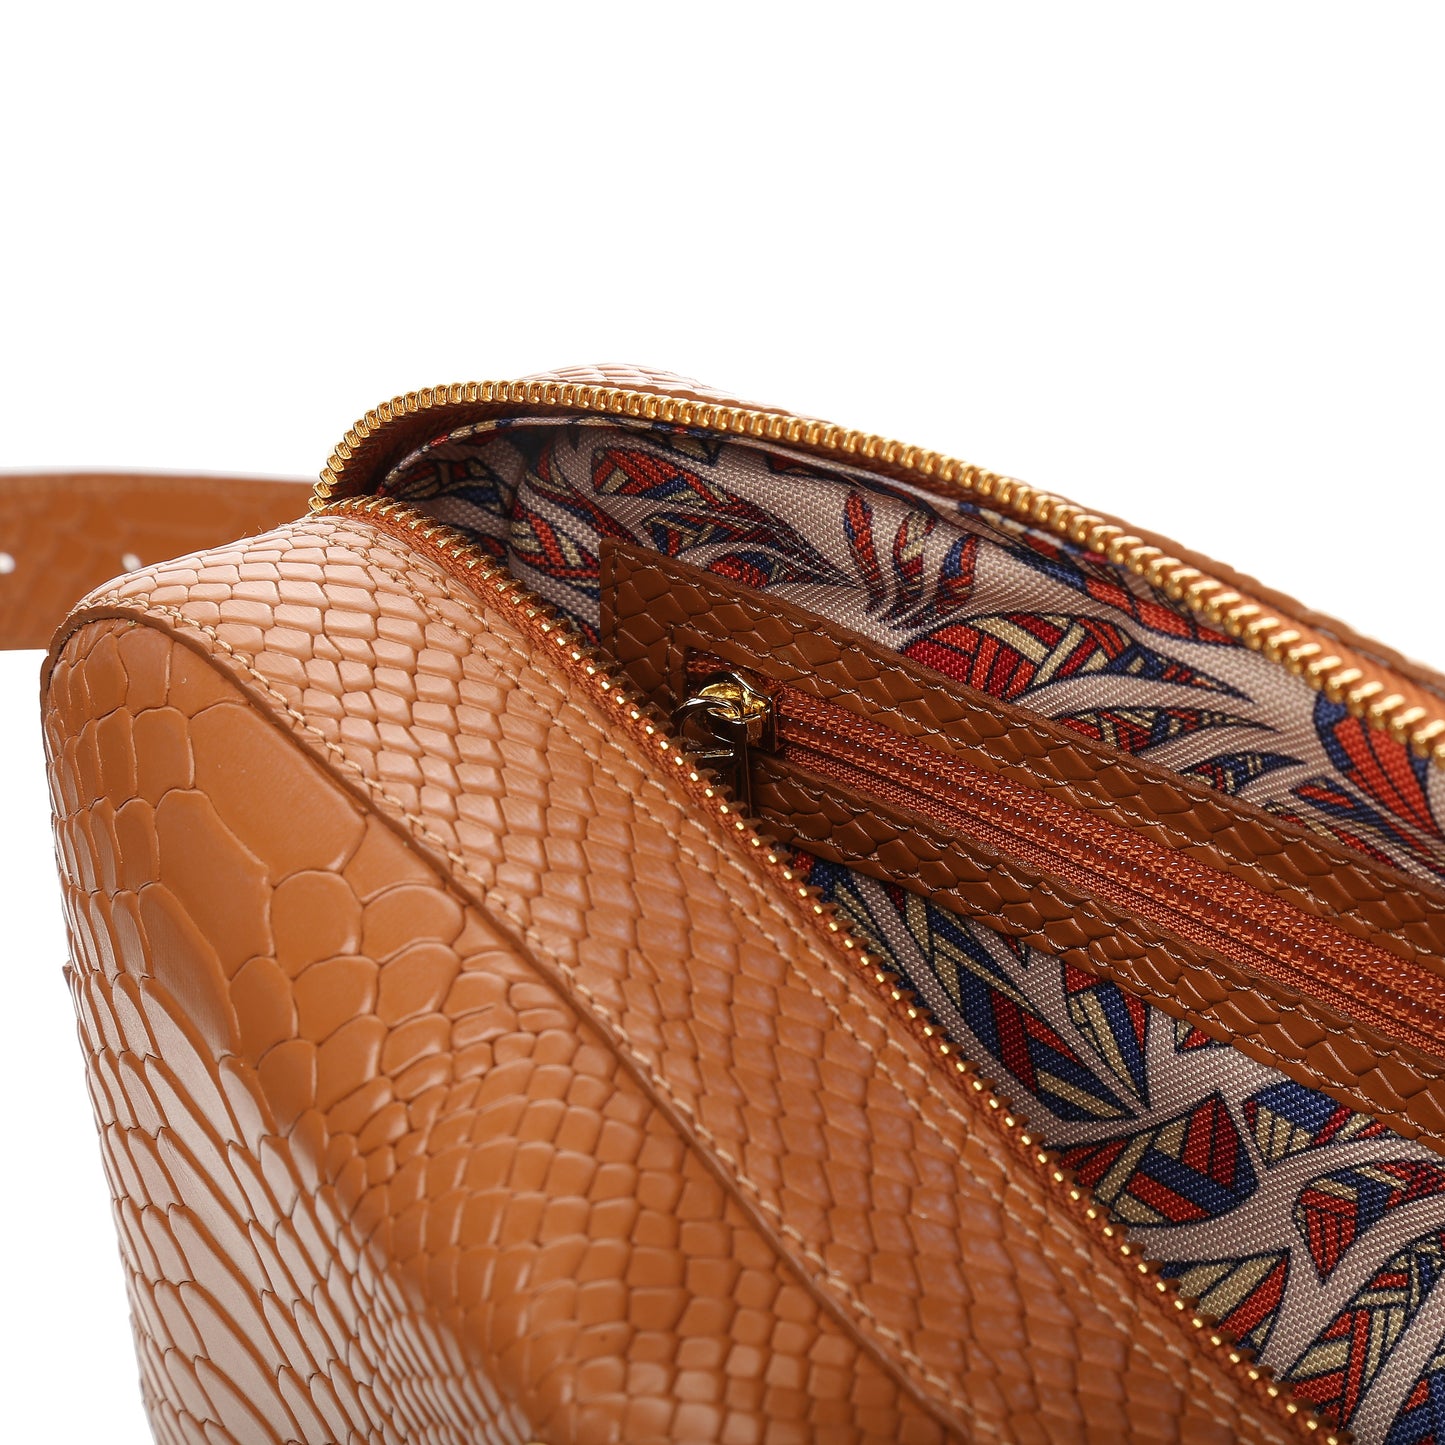 ALFIE COGNAC women's leather handbag